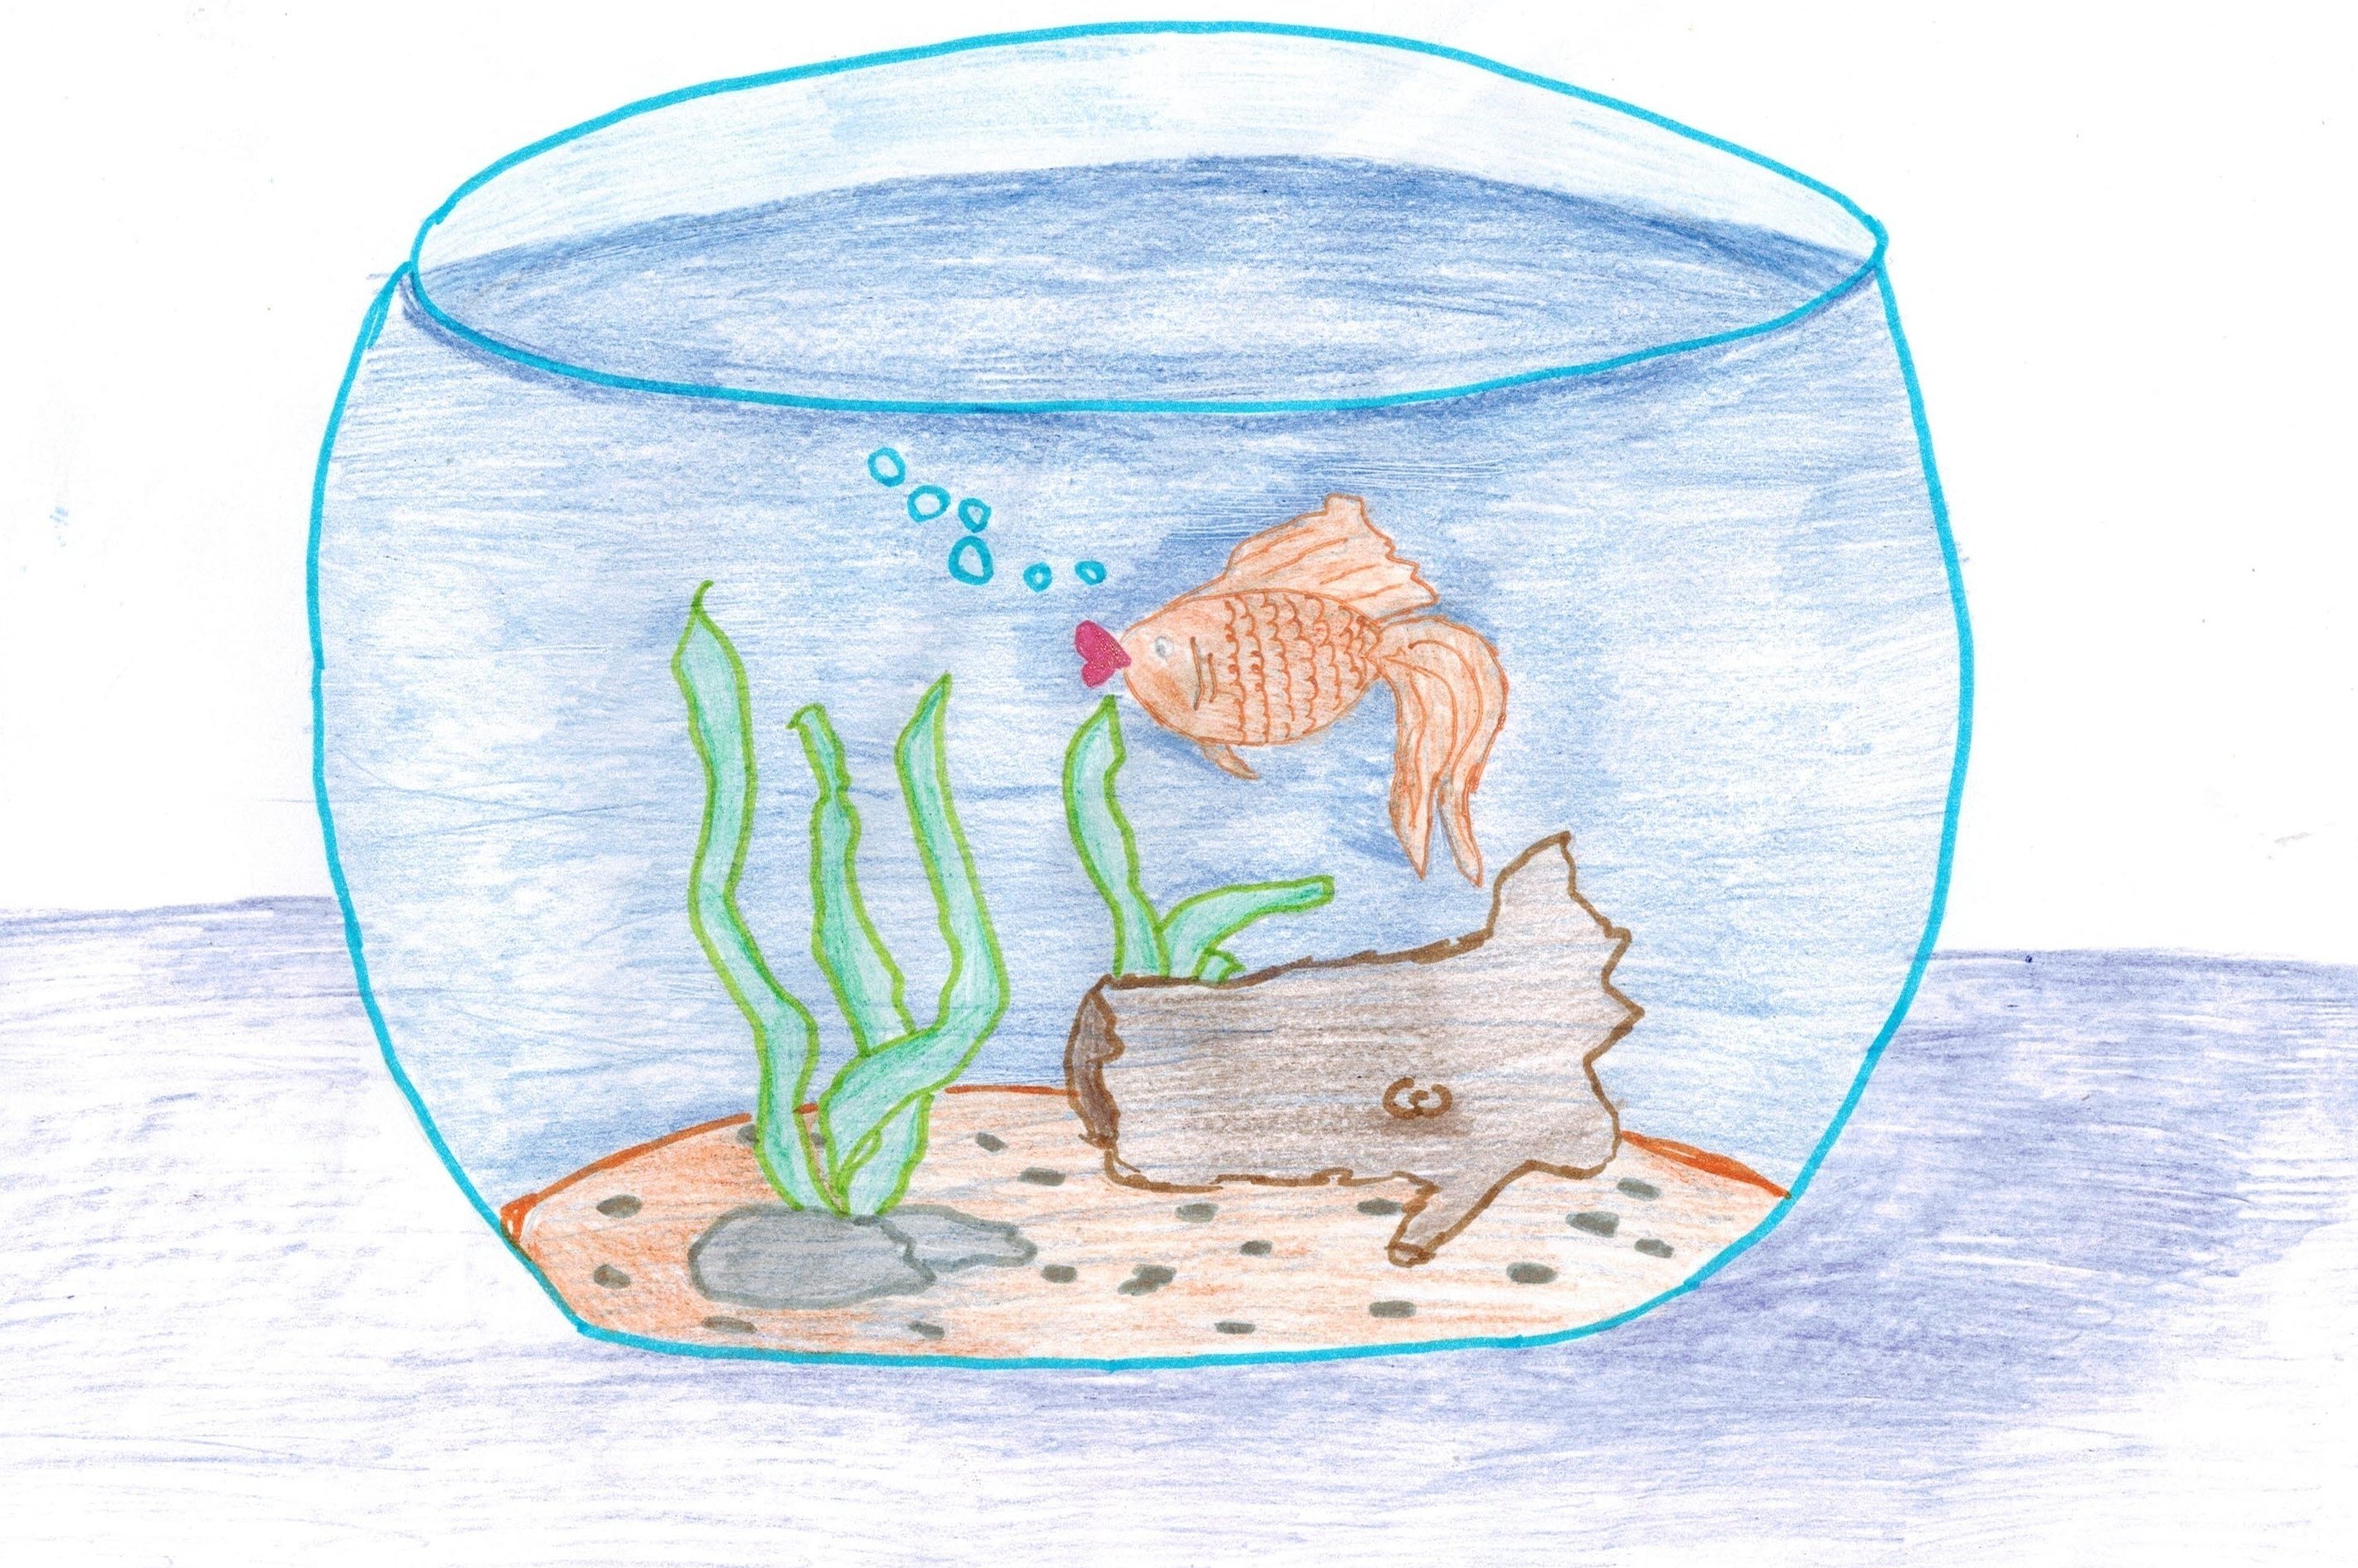 Иллюстрация к пьесе сен Санса аквариум